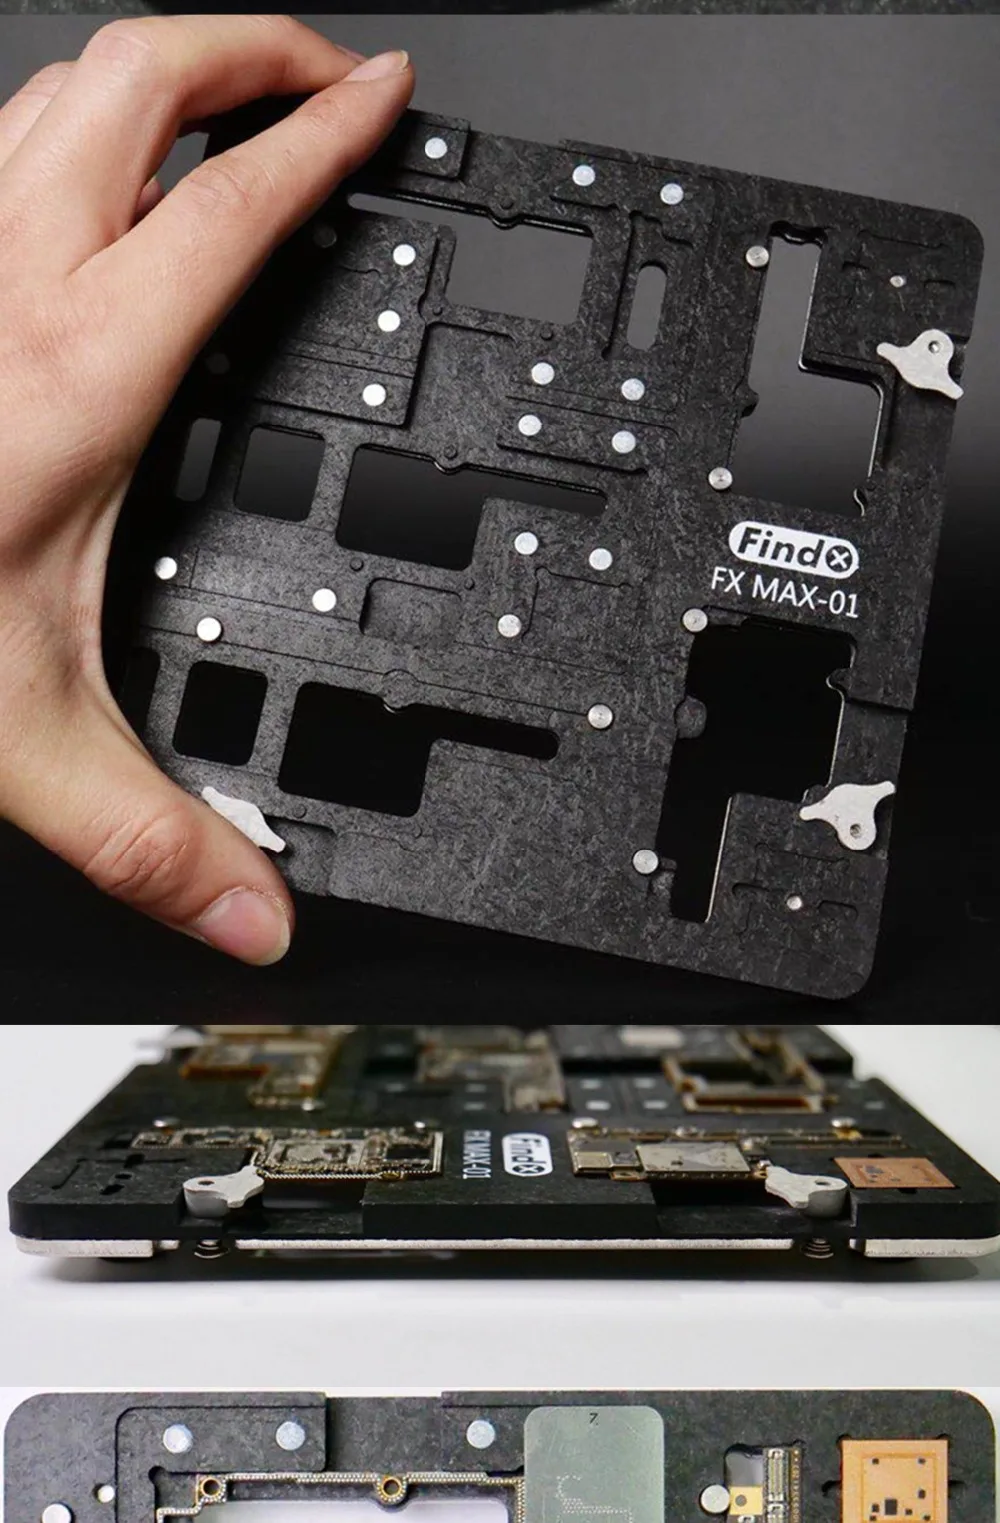 UANME телефон Ремонтный комплект материнская плата приспособление для iPhone X XS XMAX процессор чип Ремонт Инструменты PCB Держатель джиг с магнитом хорошая стабильность